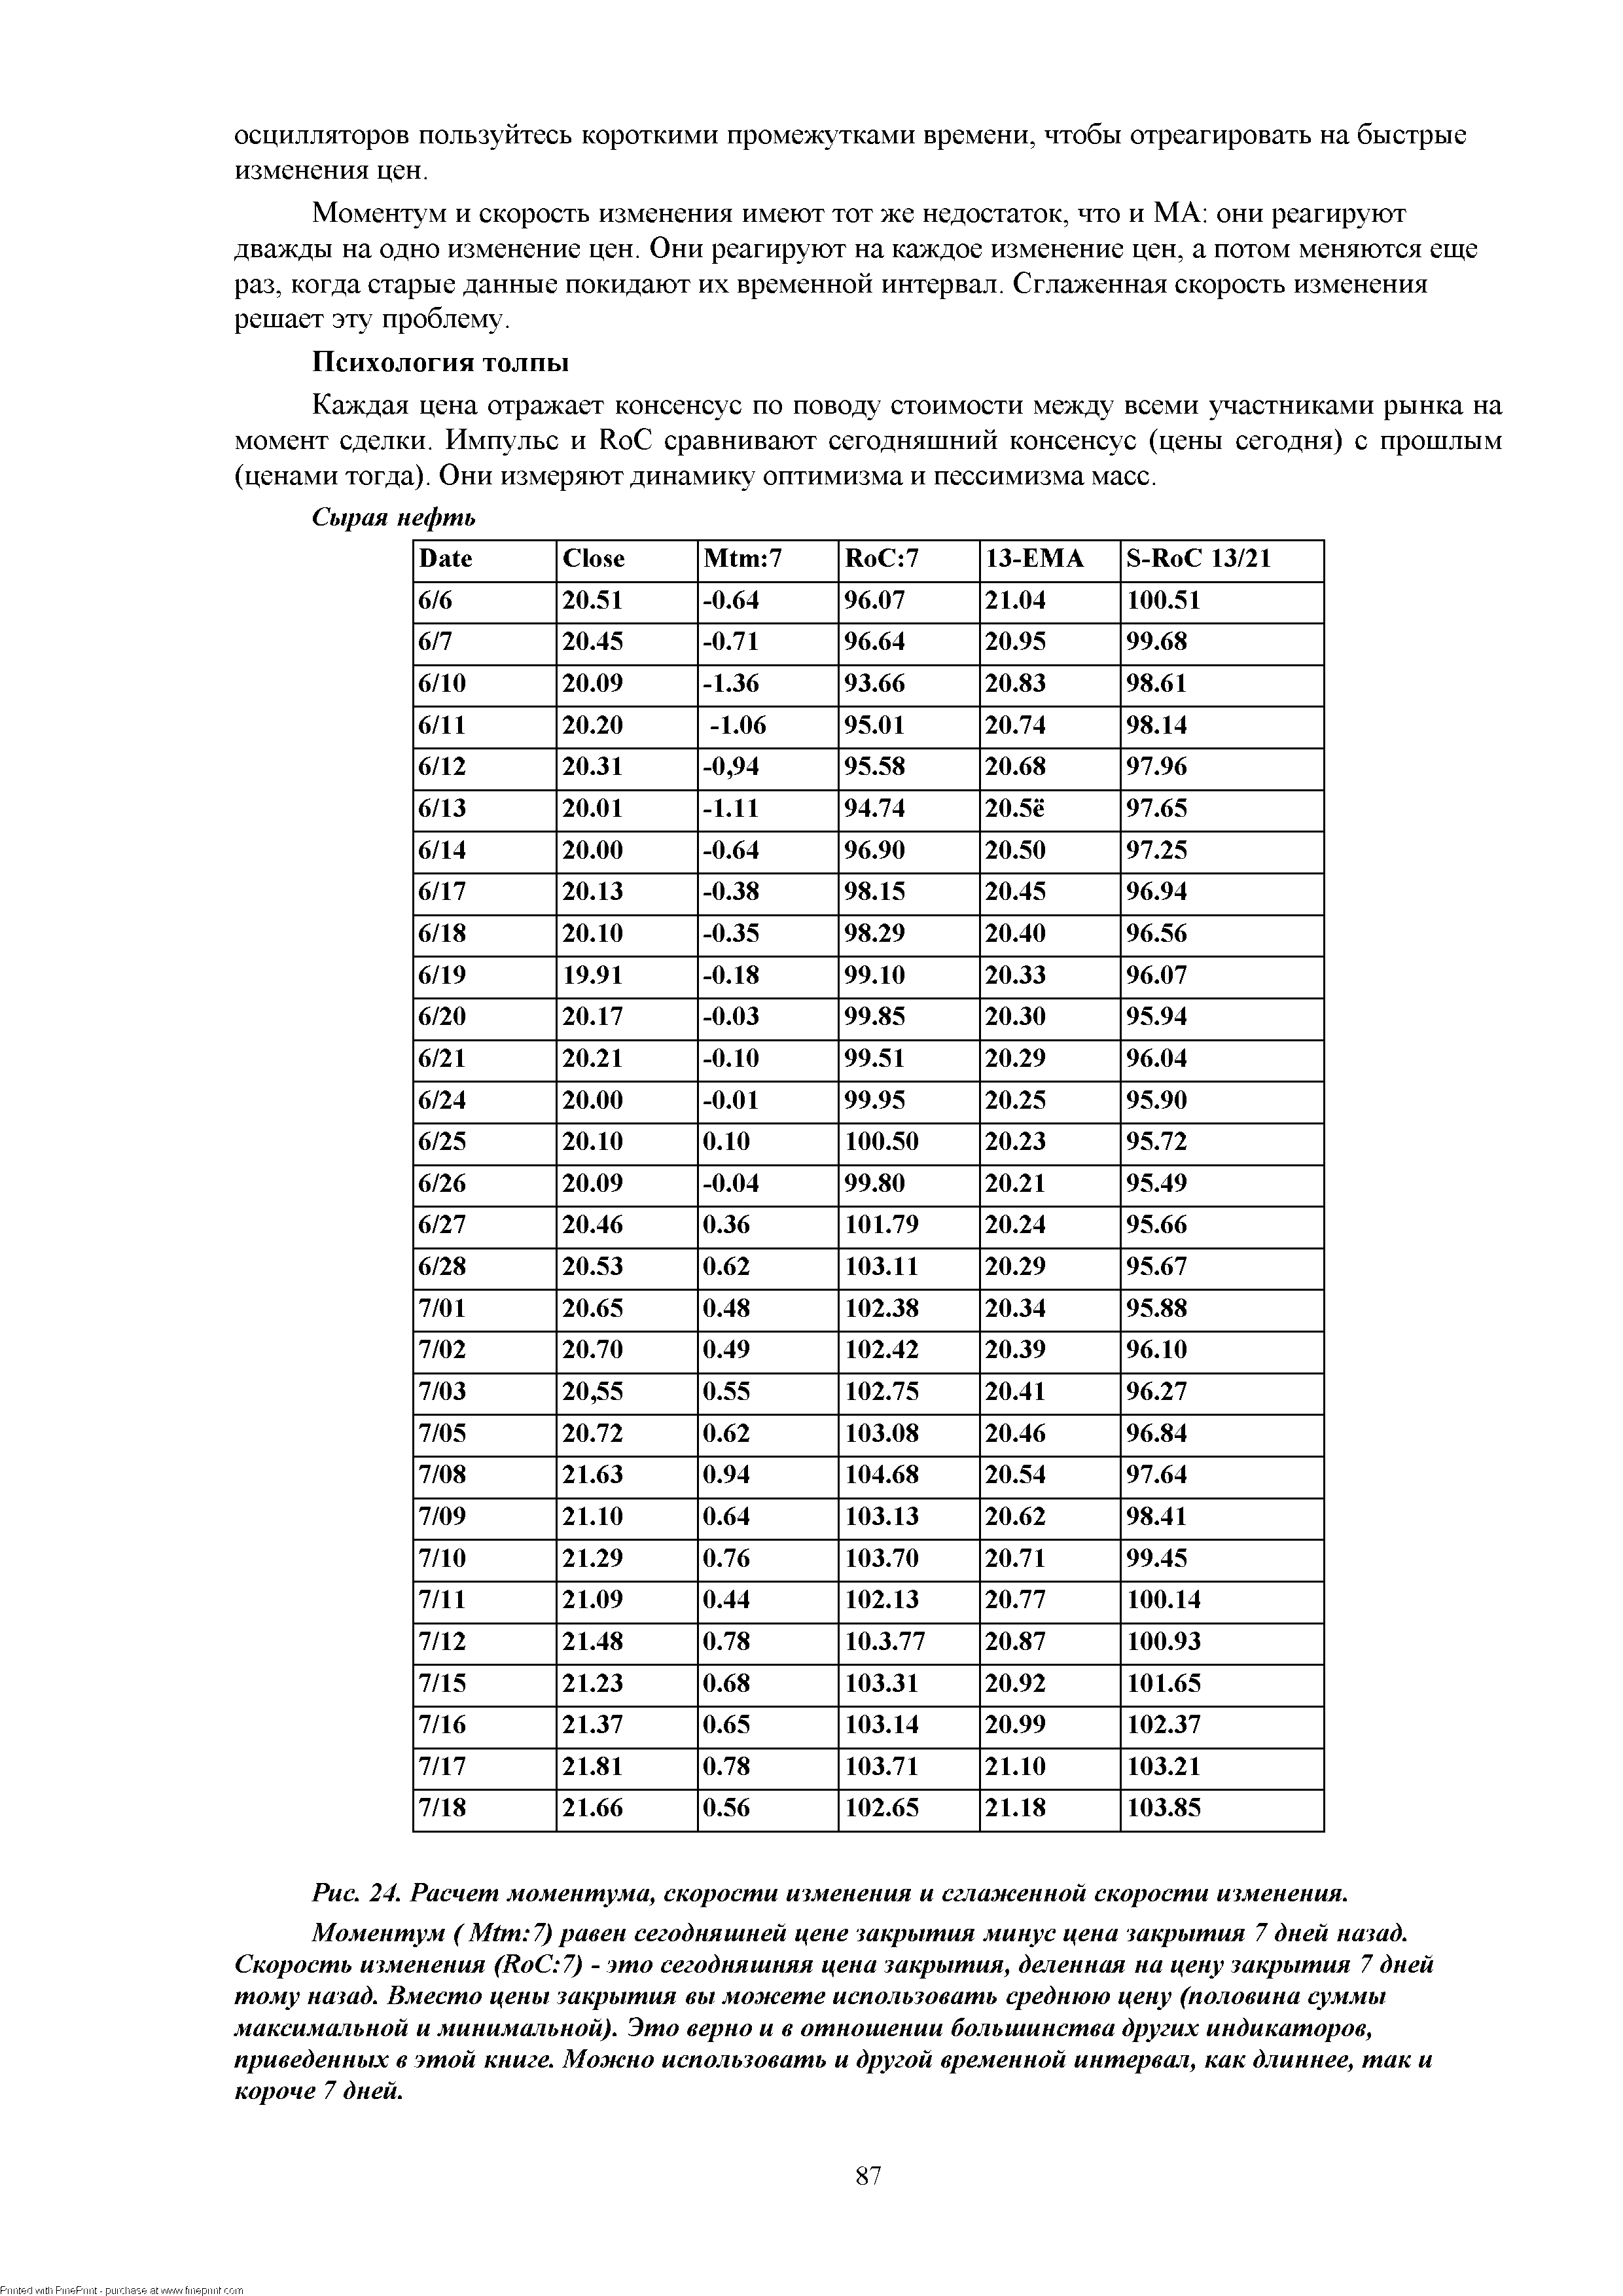 Рис. 24. Расчет моментума, <a href="/info/51093">скорости изменения</a> и сглаженной скорости изменения.
